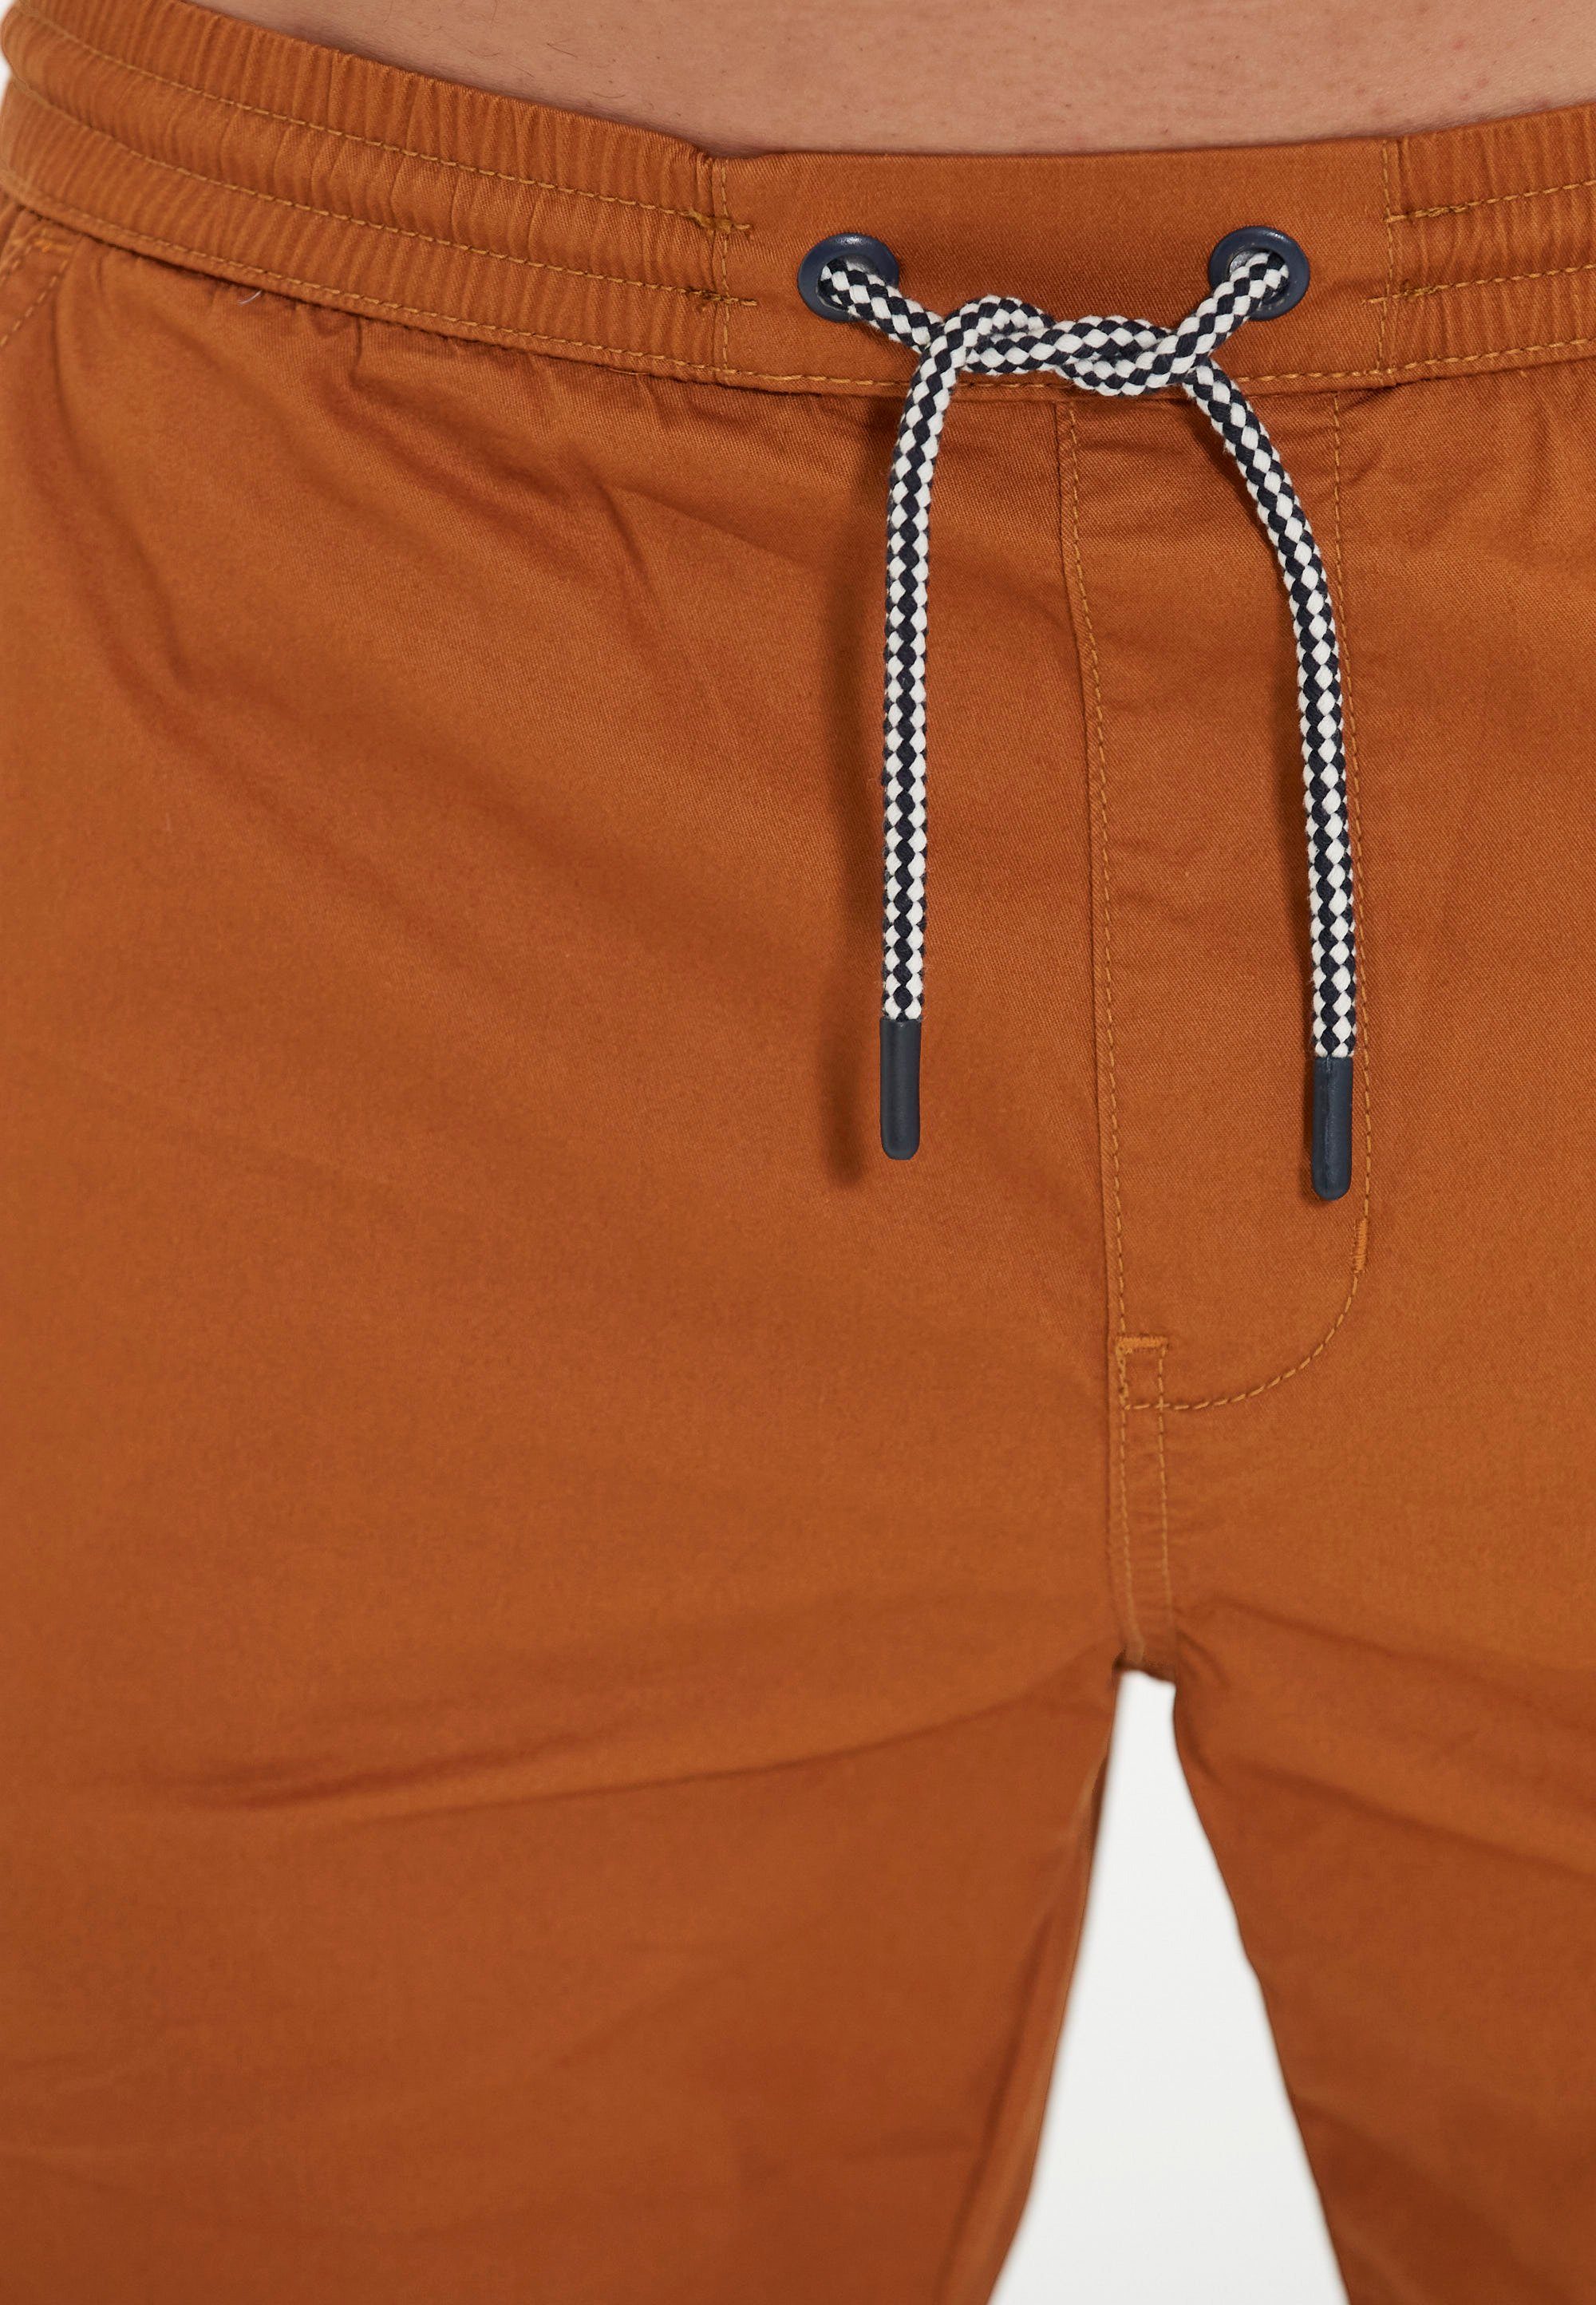 praktischen mit orange Gilchrest CRUZ Shorts Seitentaschen